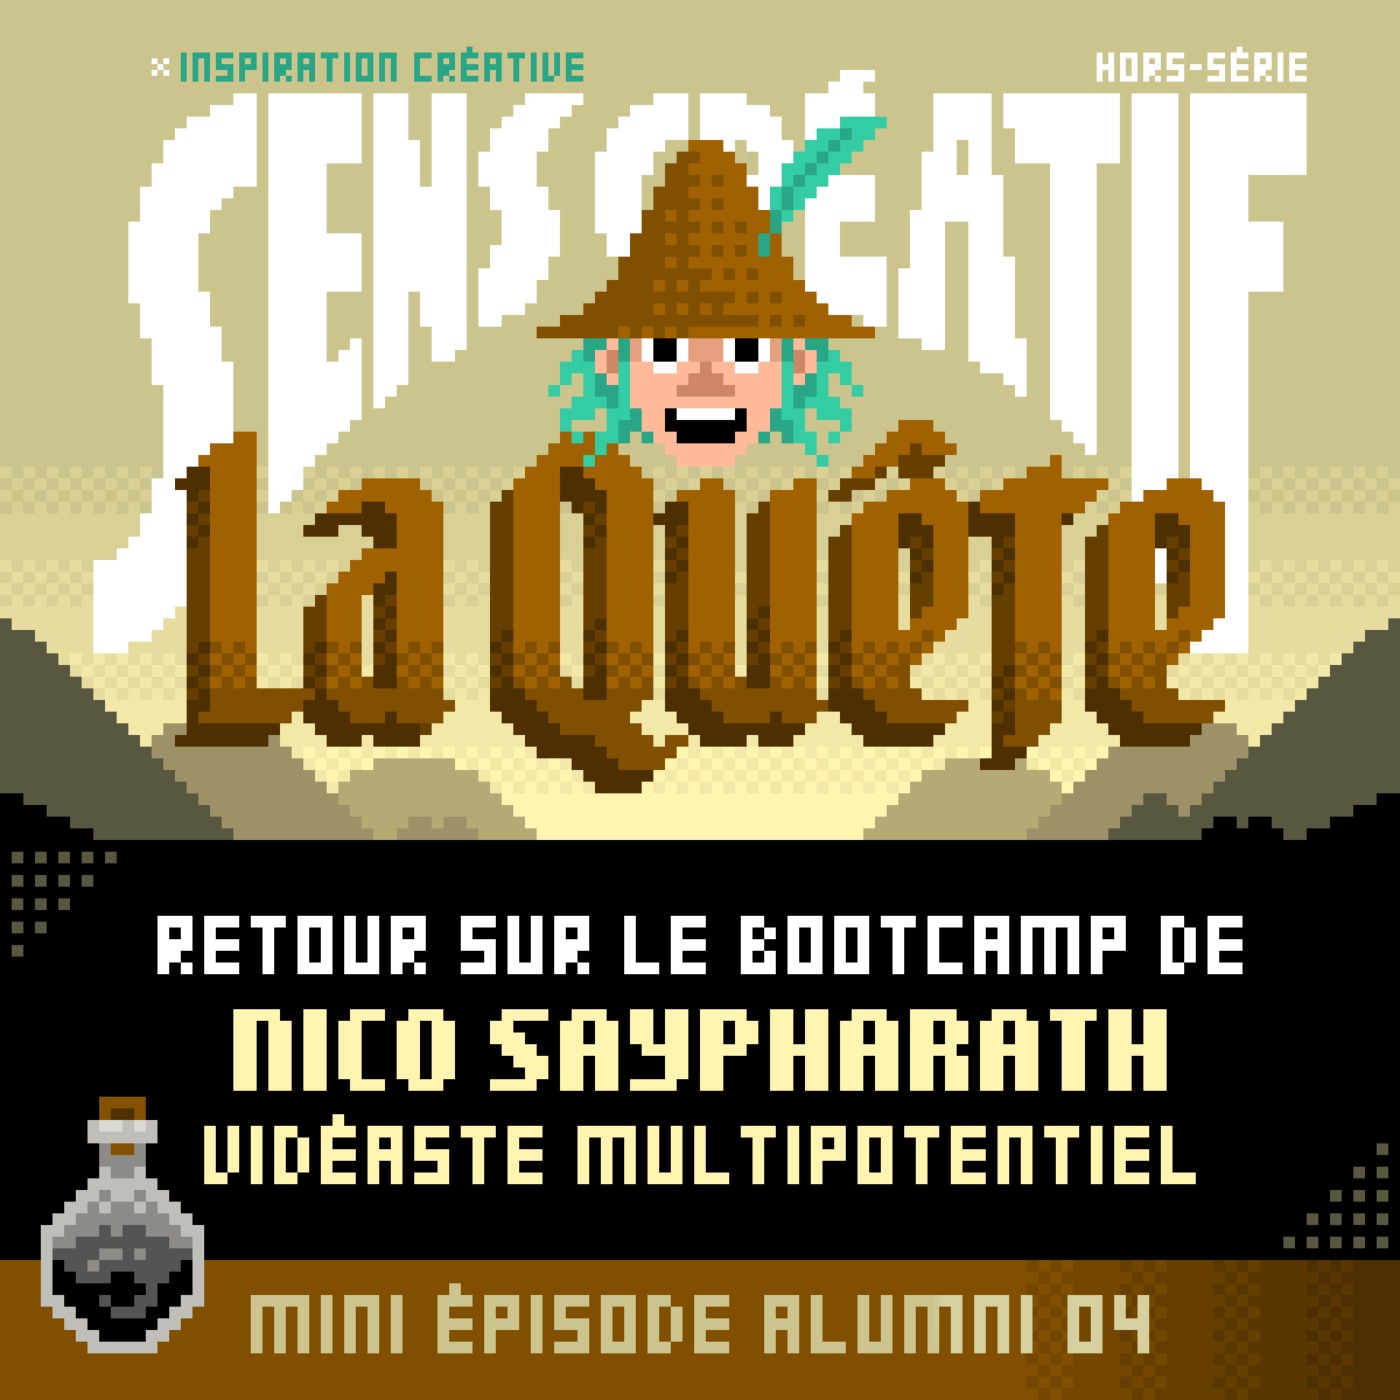 cover art for La Quête : le bootcamp de Nicolas Saypharath (vidéaste)